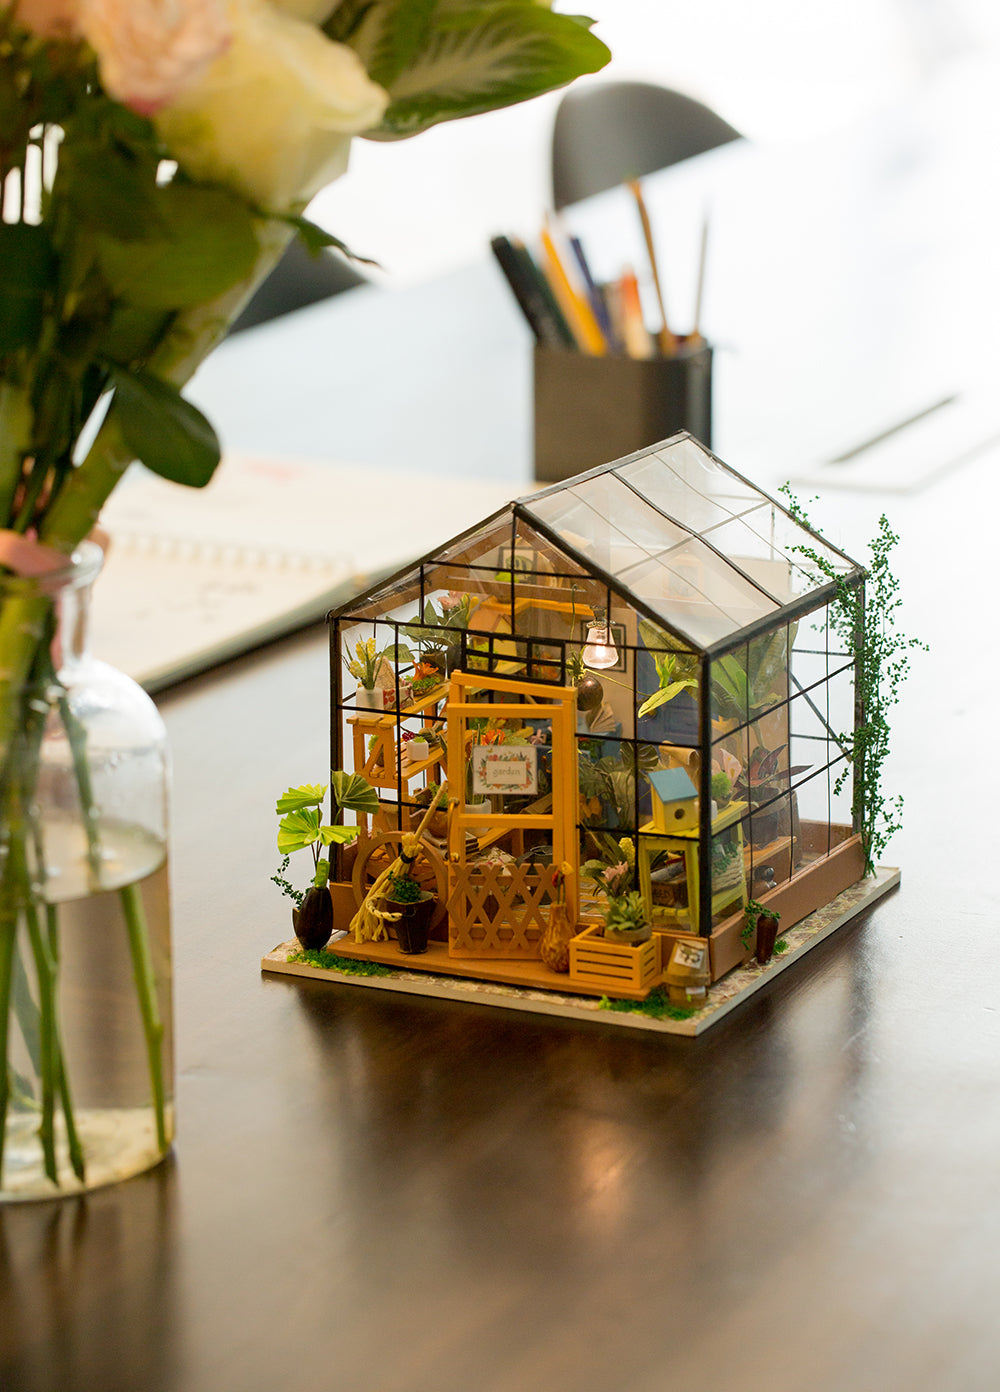 Maison de poupée miniature Rolife DIY - Maison fleurie de Cathy DG104